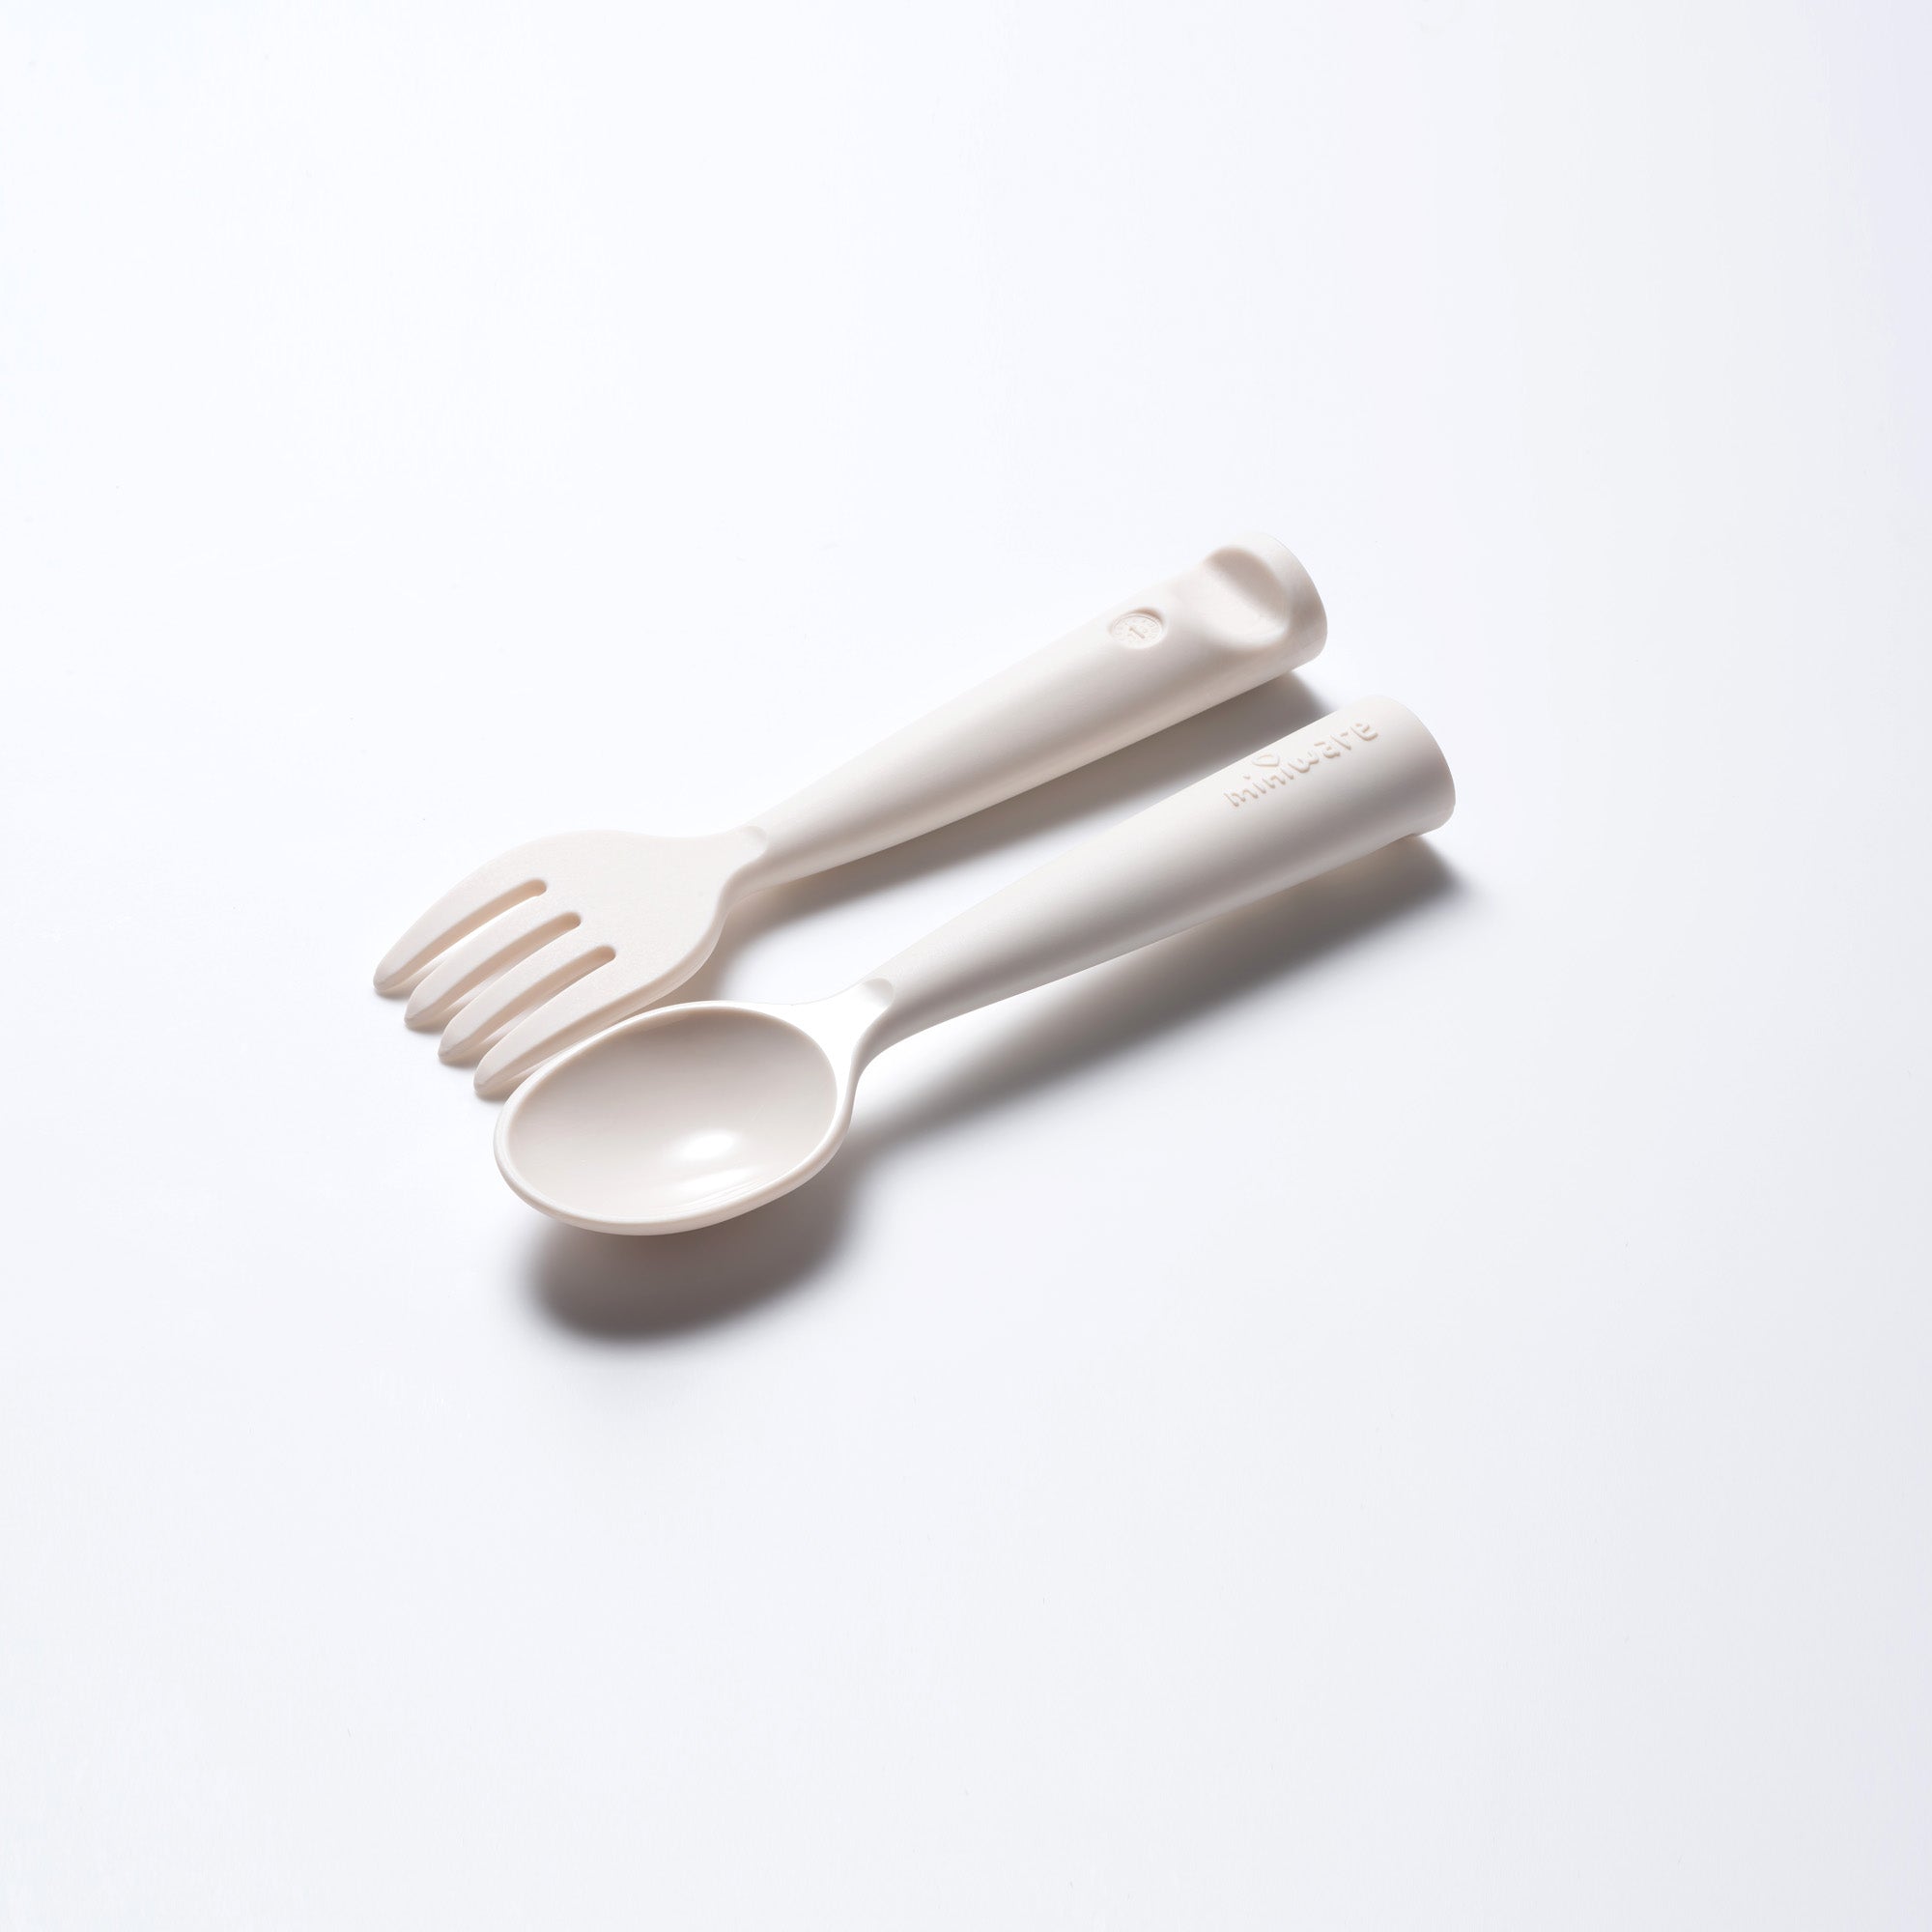 Miniware Silicone Teething Spoon Set - Gray & Aqua